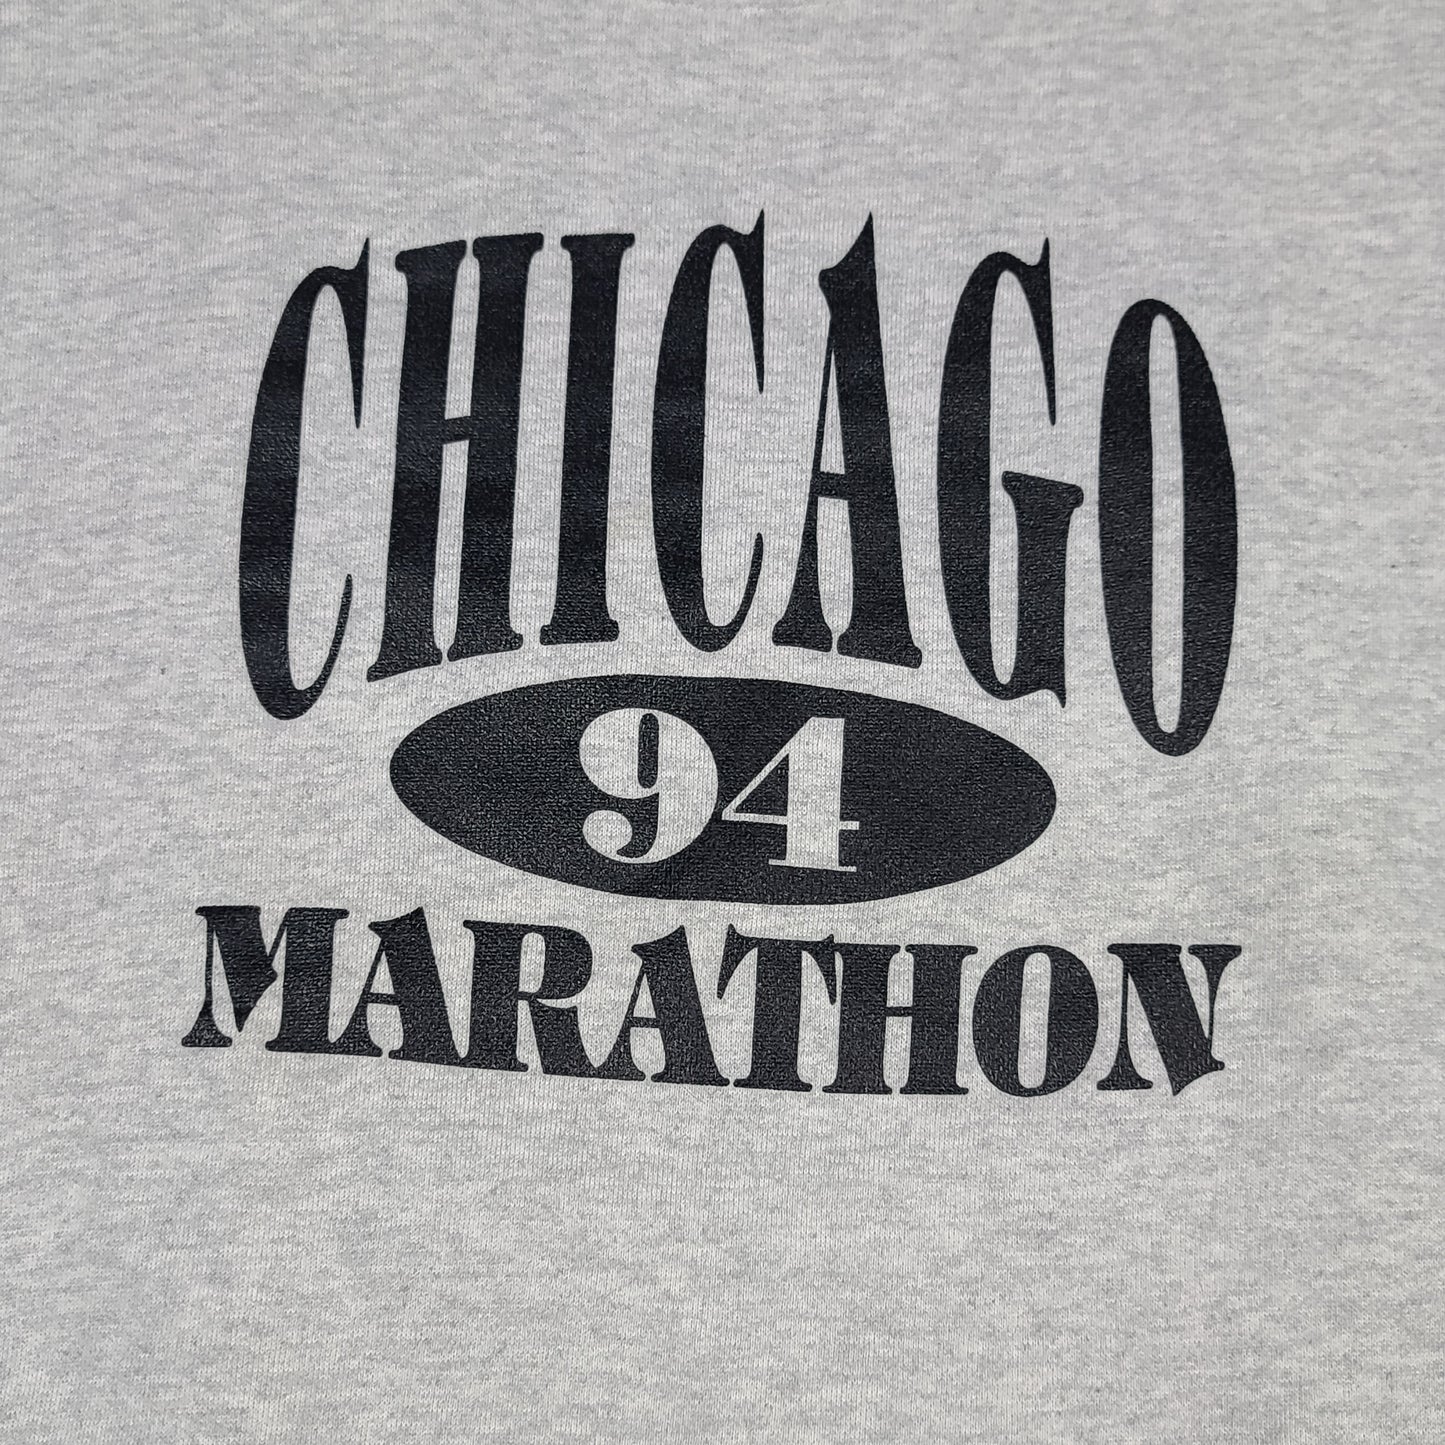 Vintage 1994 Chicago Marathon Gray Sweatshirt